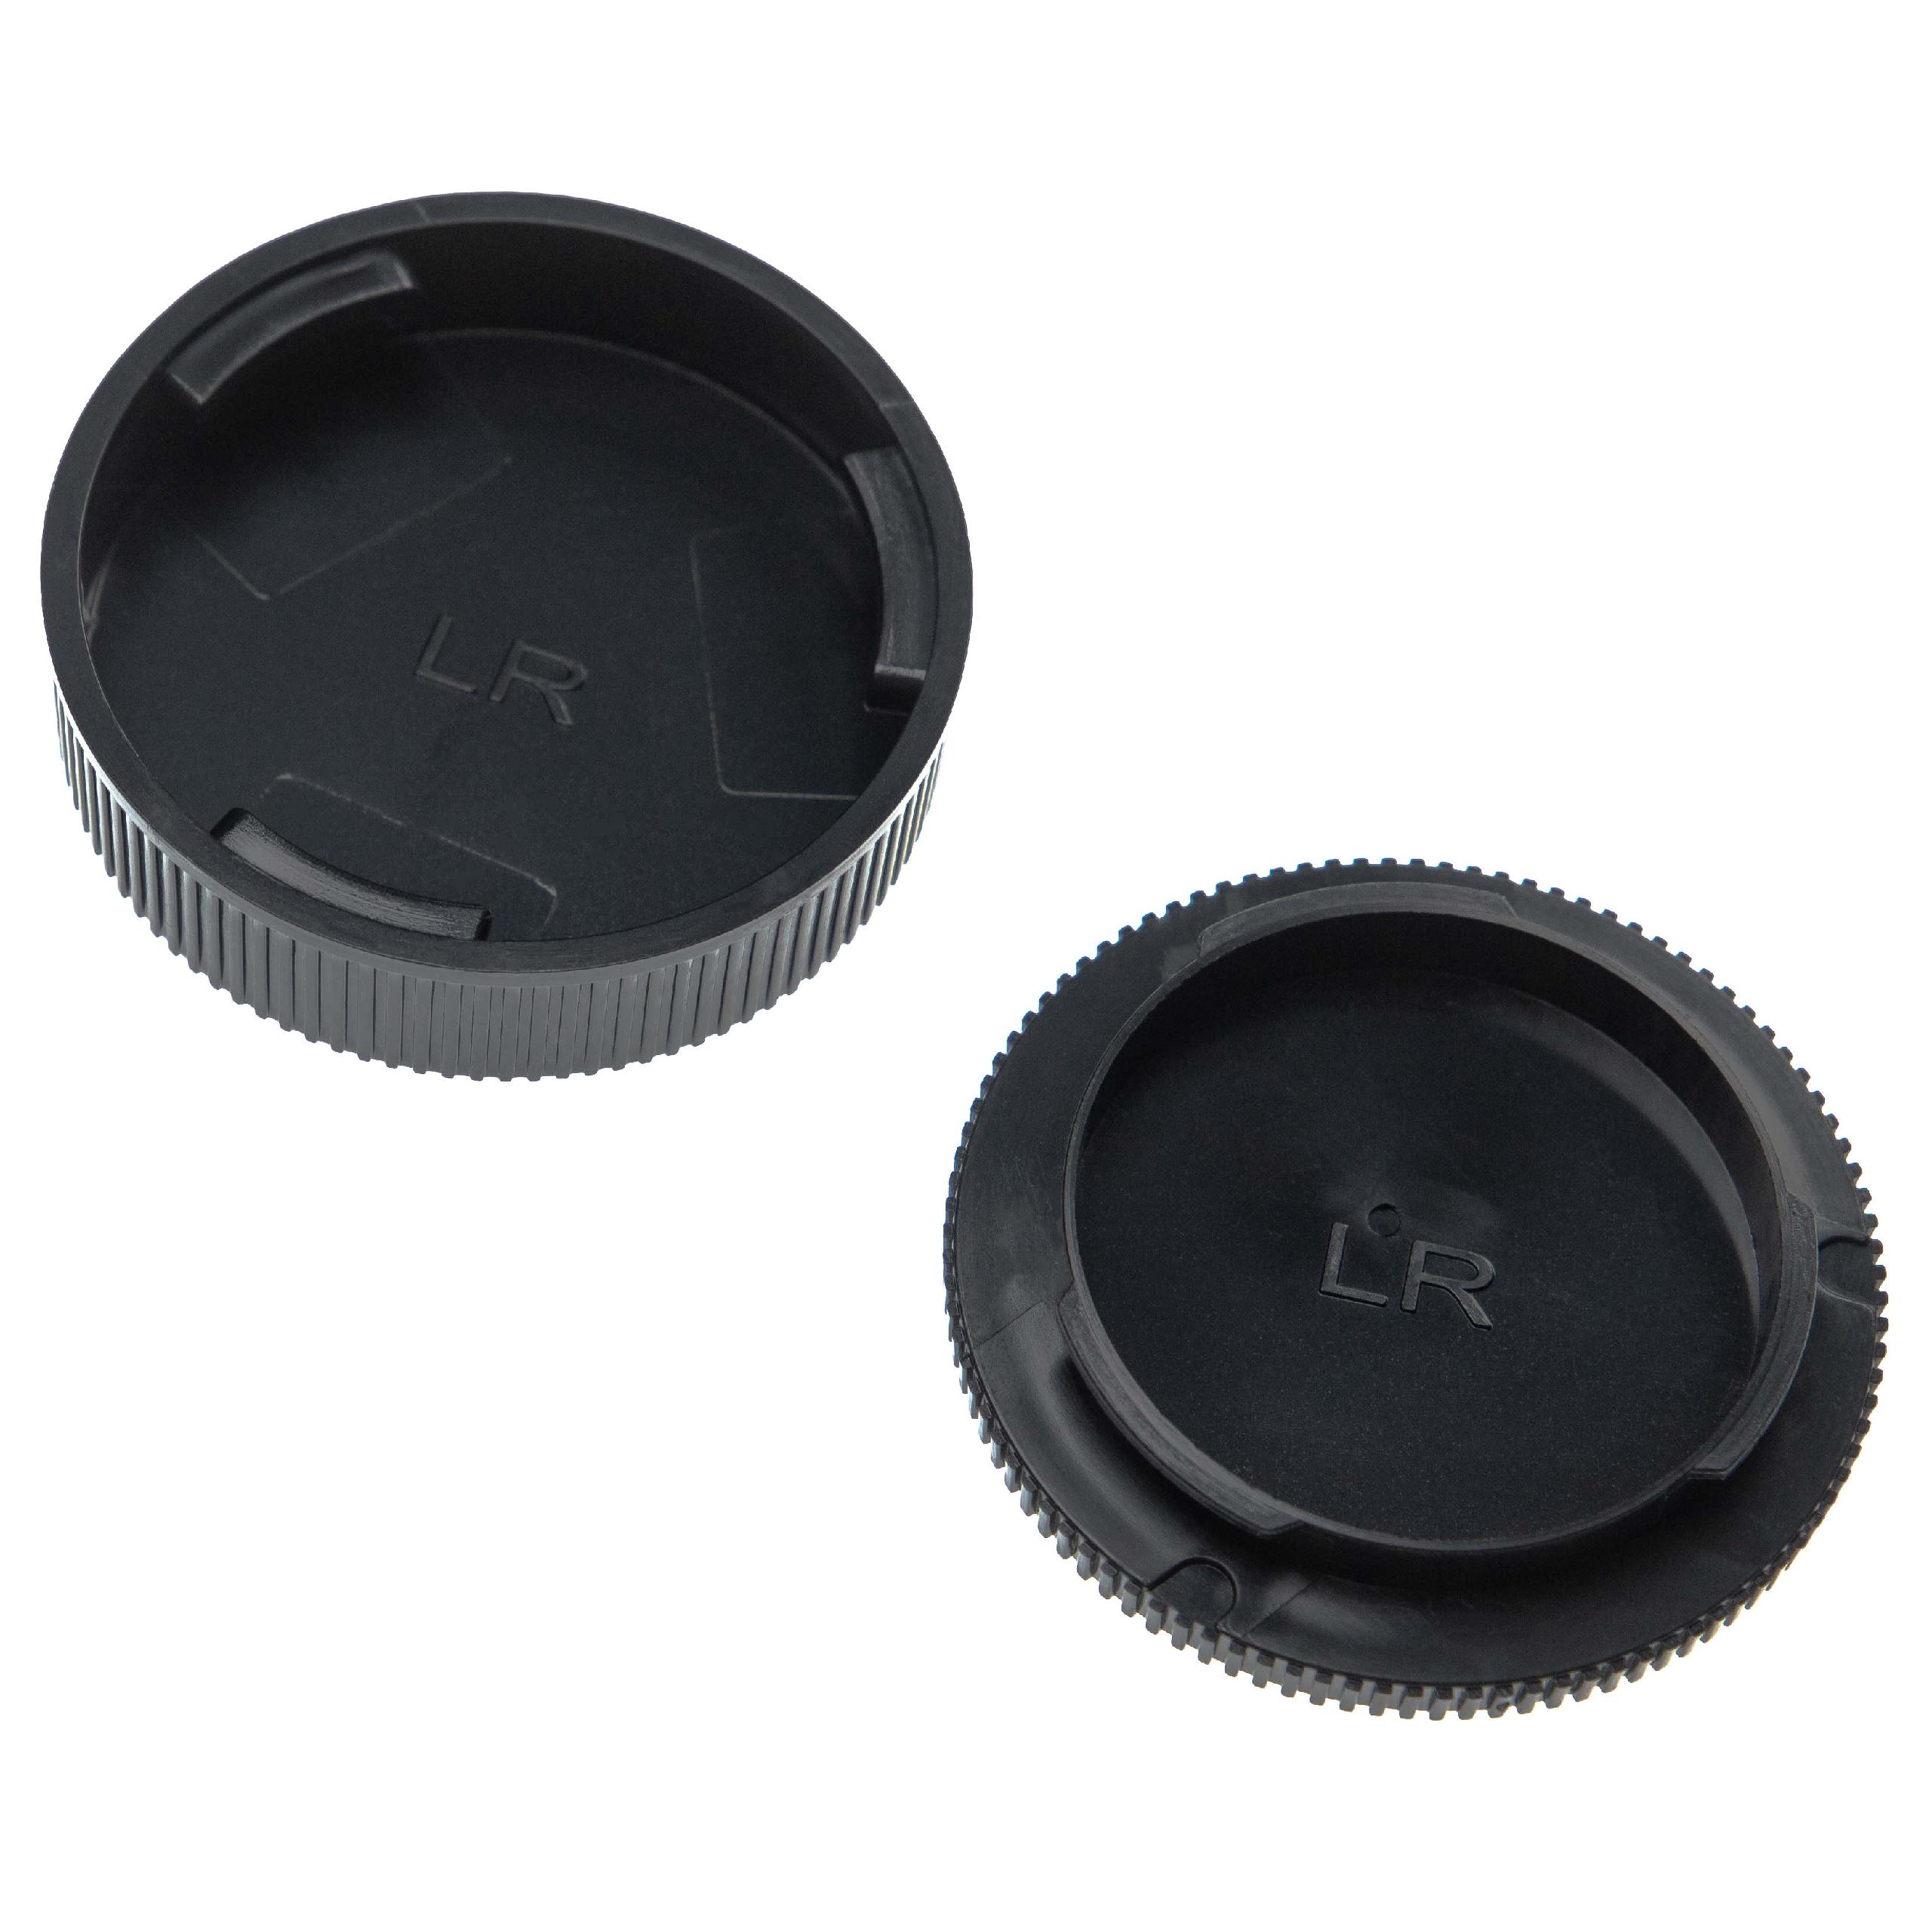 vhbw set di copriobiettivi compatibile con Tessar 2.8/50 lenti - Tappo anteriore e posteriore, plastica nero